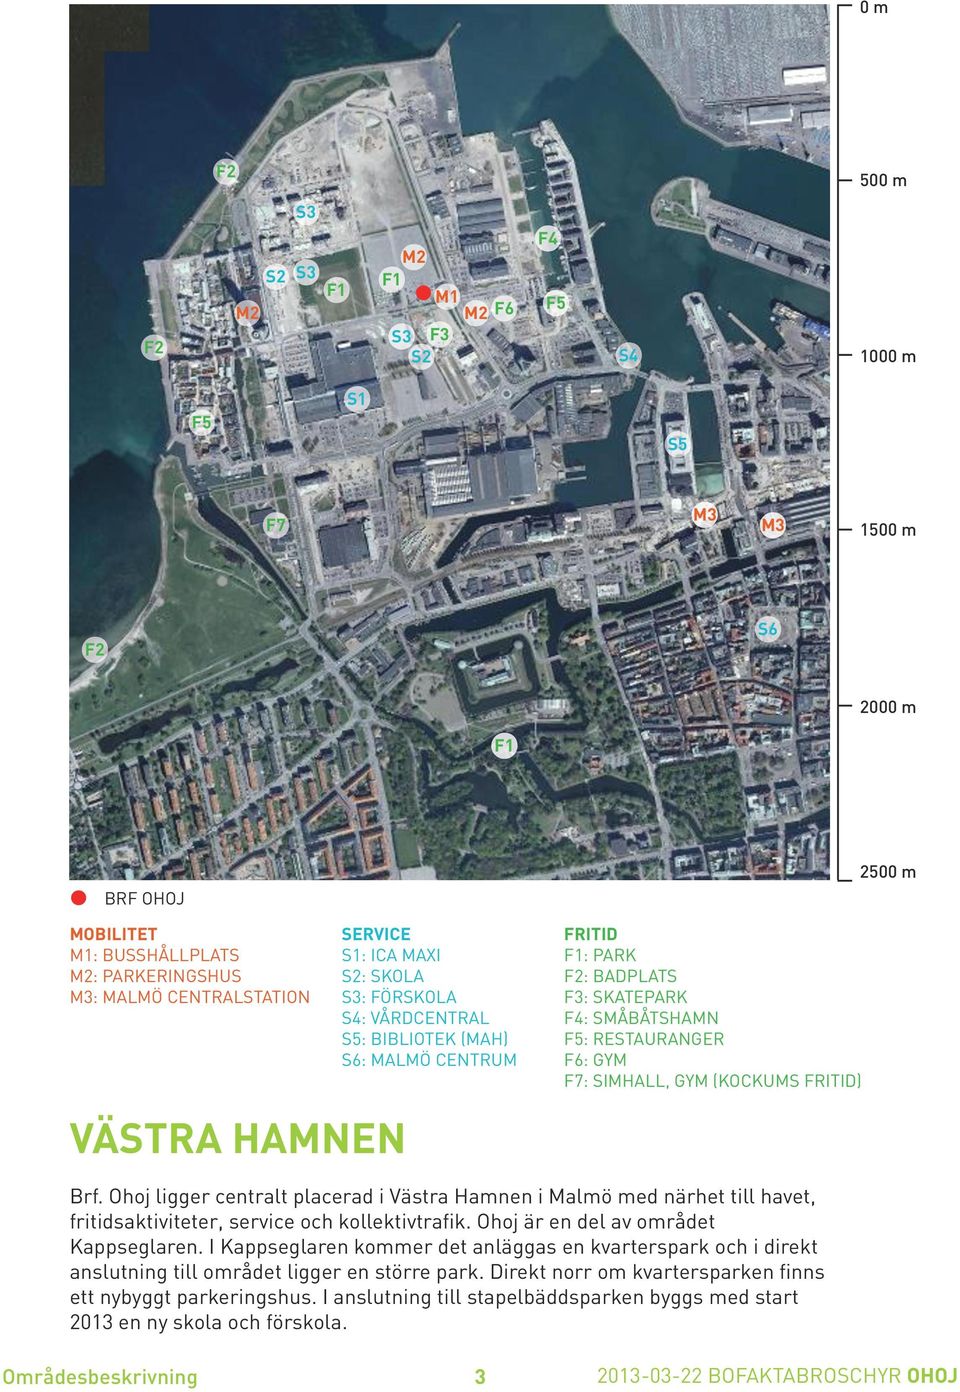 Brf. Ohoj ligger centralt placerad i Västra amnen i Malmö med närhet till havet, fritidsaktiviteter, service och kollektivtrafik. Ohoj är en del av området Kappseglaren.